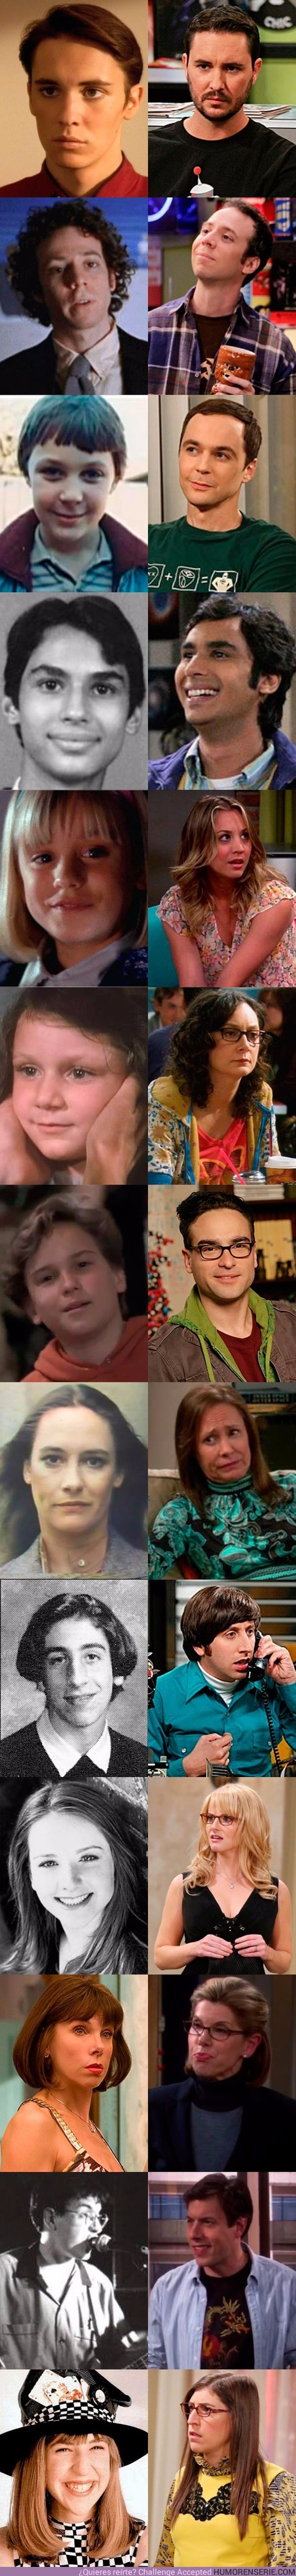 11057 - Así eran los actores de The Big Bang Theory antes de aparecer en la serie